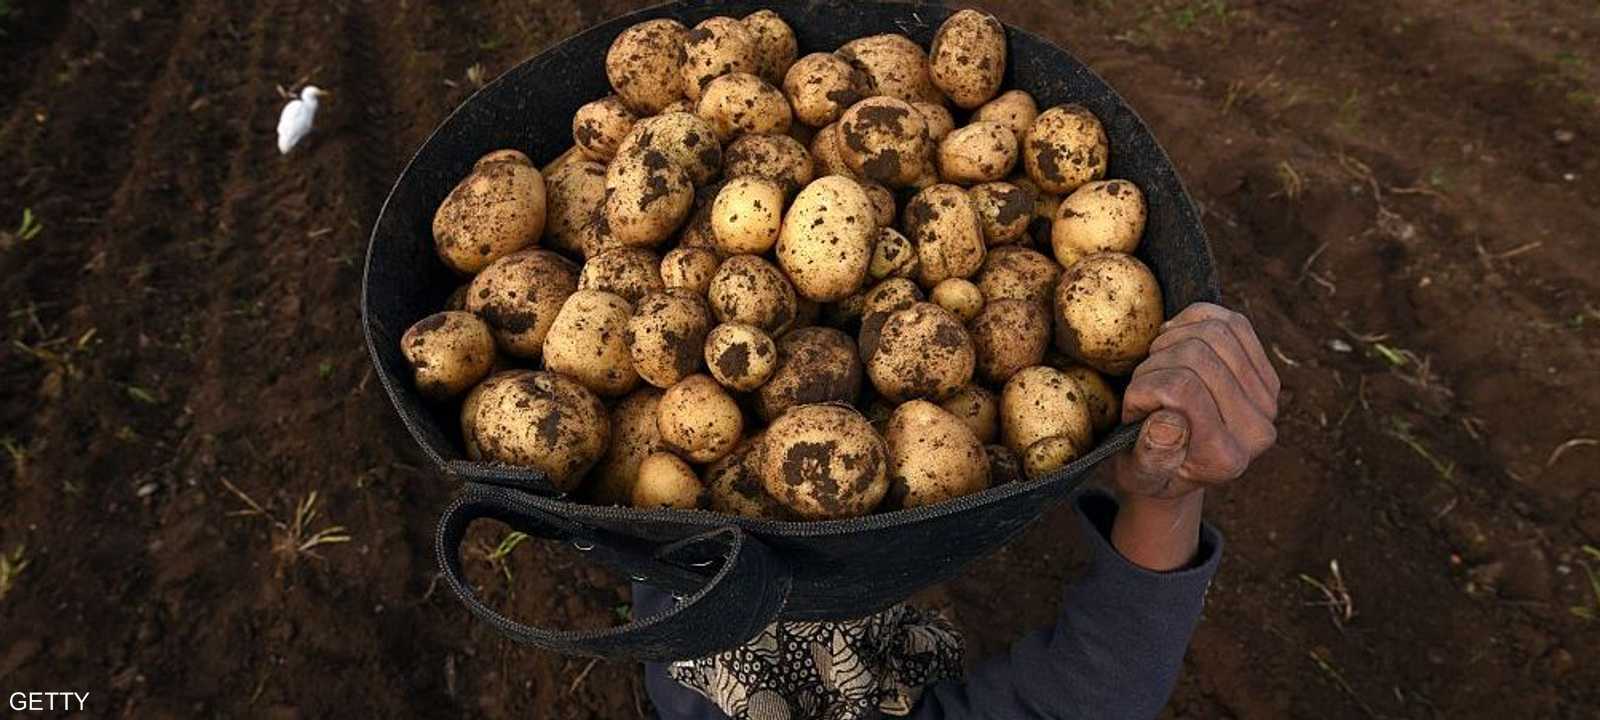 البطاطس من أشهر المحاصيل وأكثرها وفرة في مصر